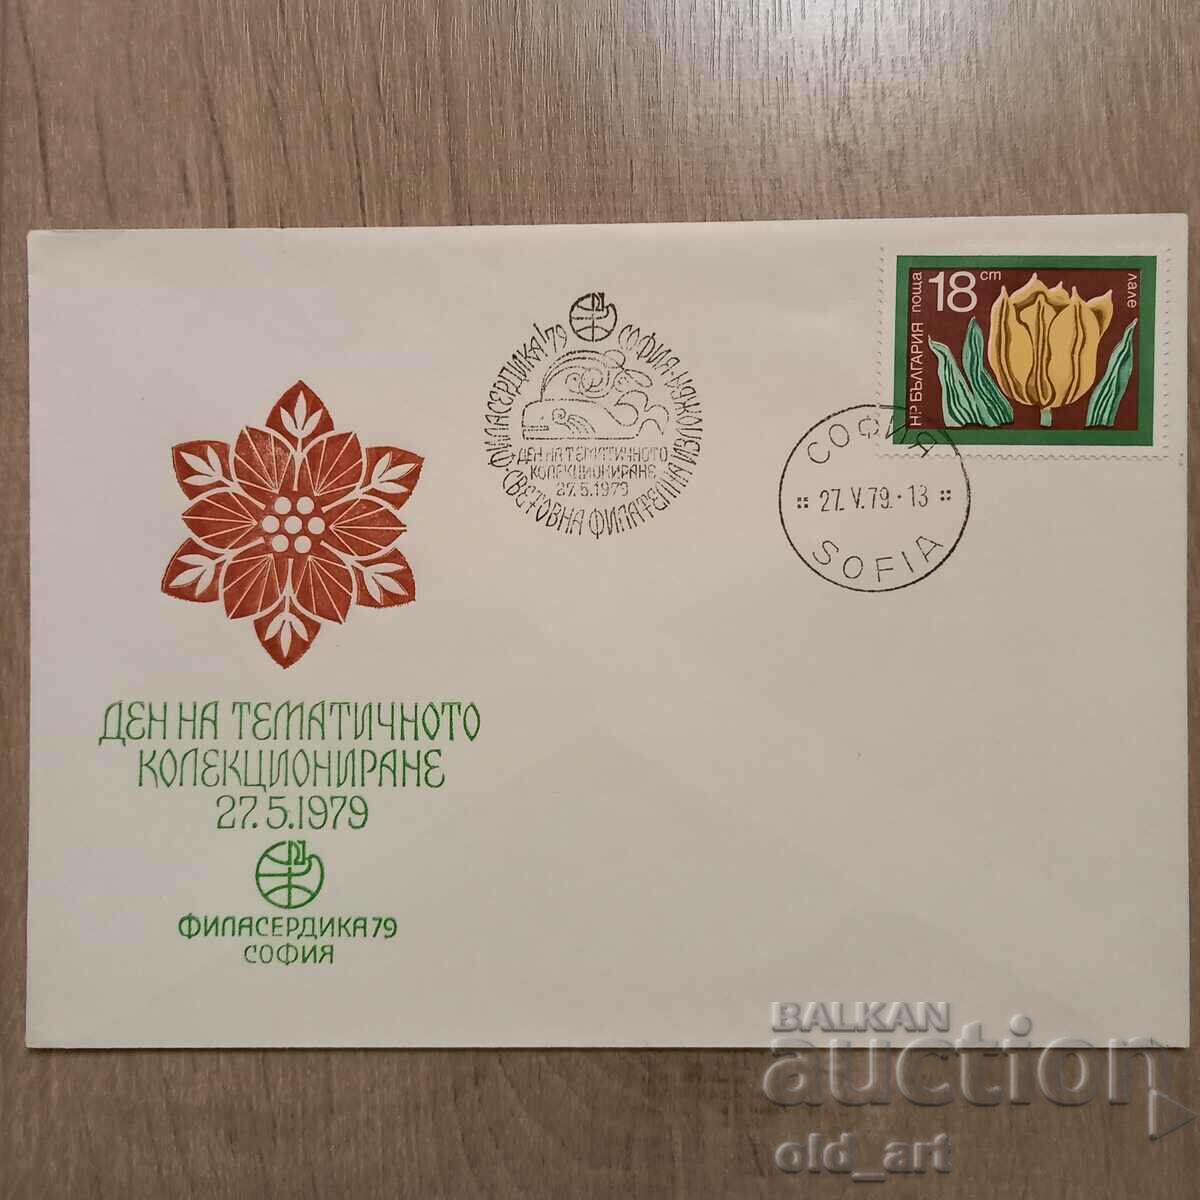 Ταχυδρομικός φάκελος - Philaserdika79-Ημέρα του θέματος. περισυλλογή